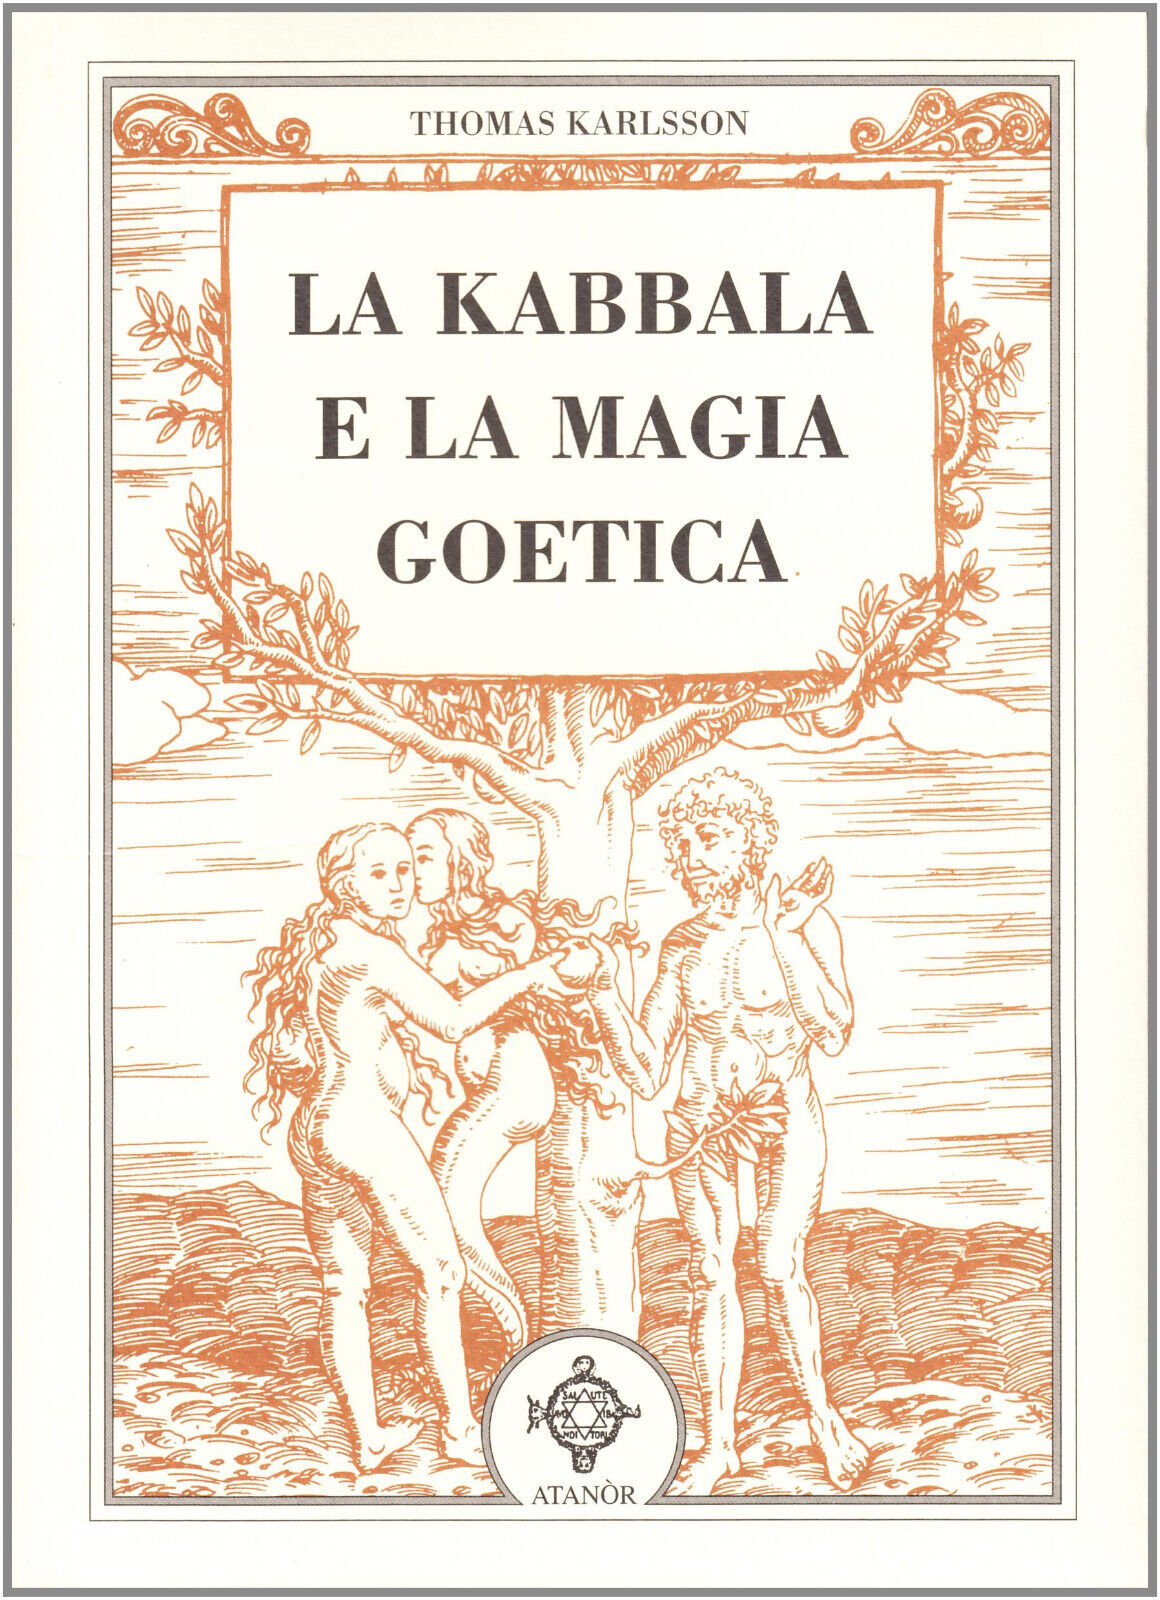 La kabbala e la magia goetica - Thomas Karlsson - Atan?r, 2005 libro usato